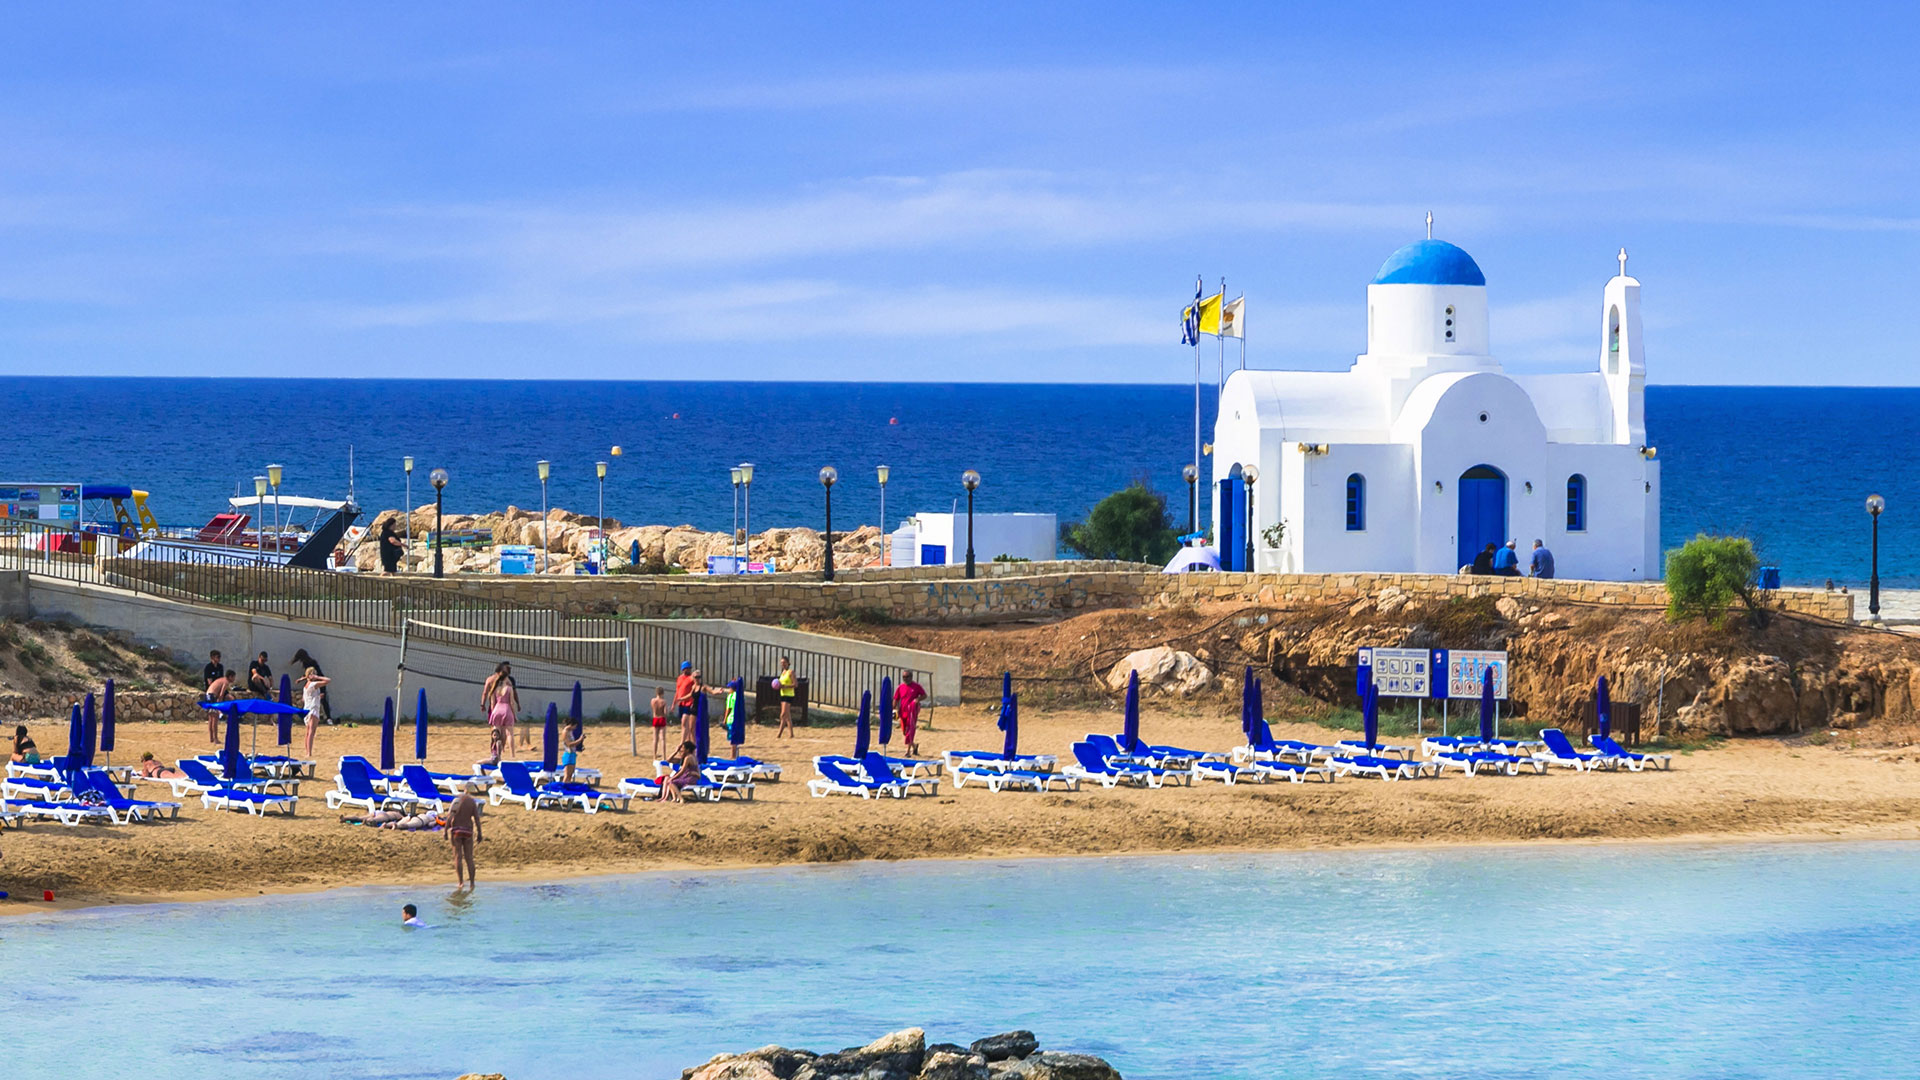 Image of Cyprus coastline.